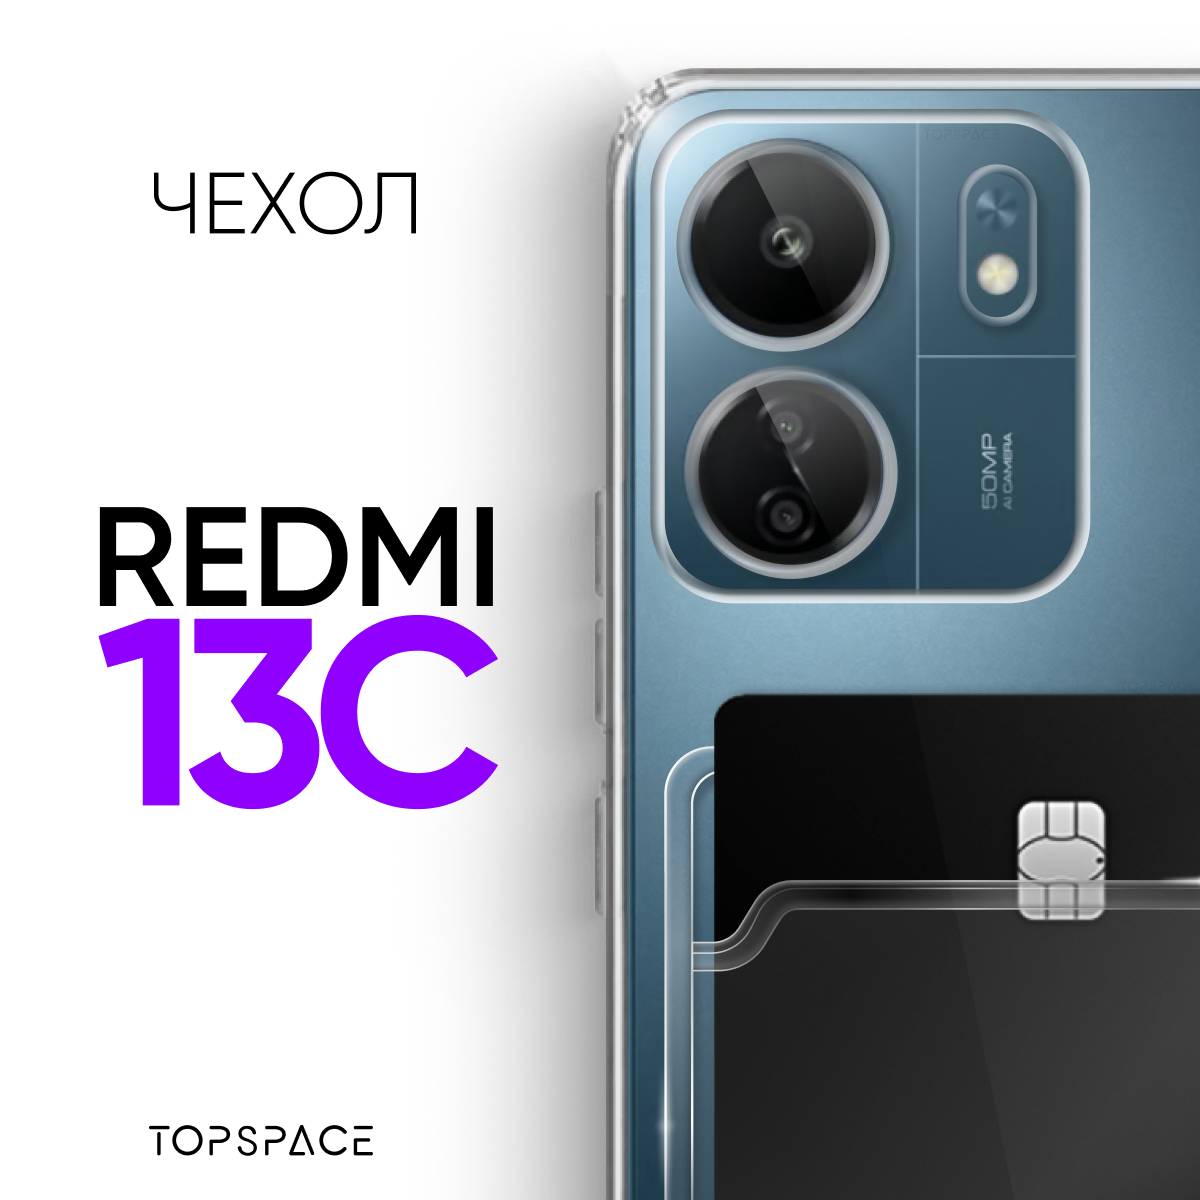 Прозрачный чехол №04 для Xiaomi Redmi 13C / противоударный прозрачный клип-кейс с карманом для карт и защитой камеры на Ксиоми Редми 13Ц